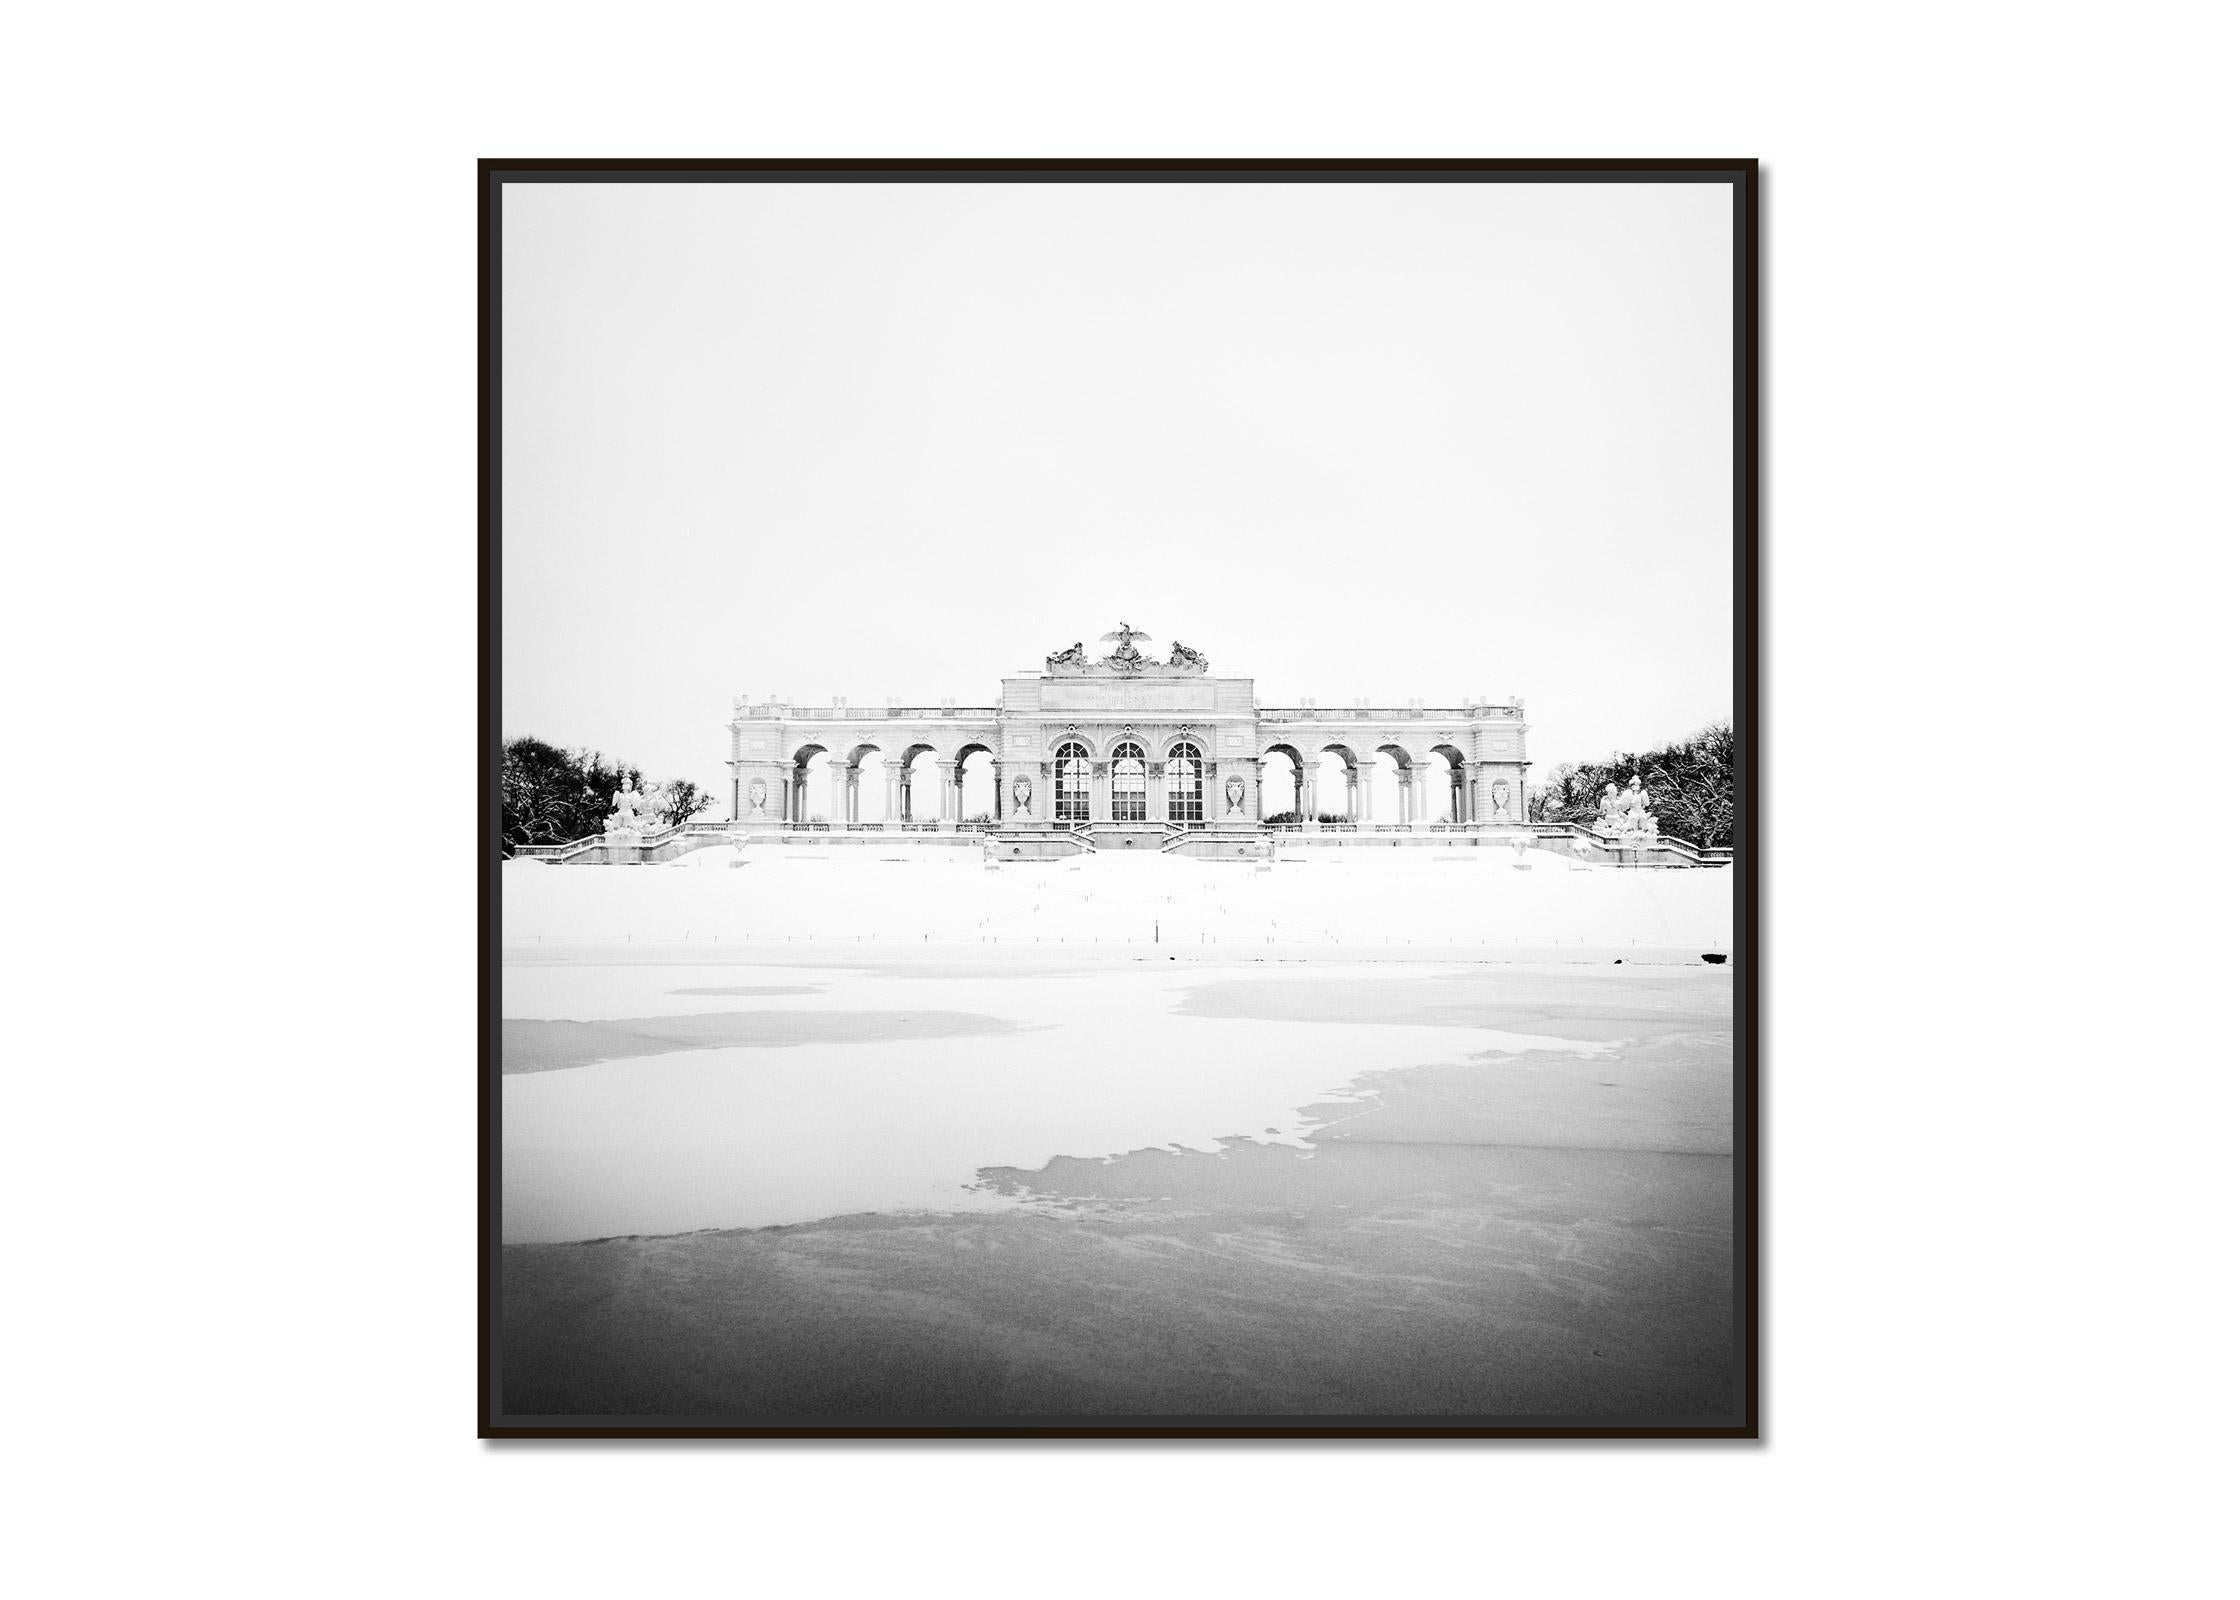 Gloriette Winter, Vienna, Schloss Schoenbrunn, black and white art photography - Photograph by Gerald Berghammer